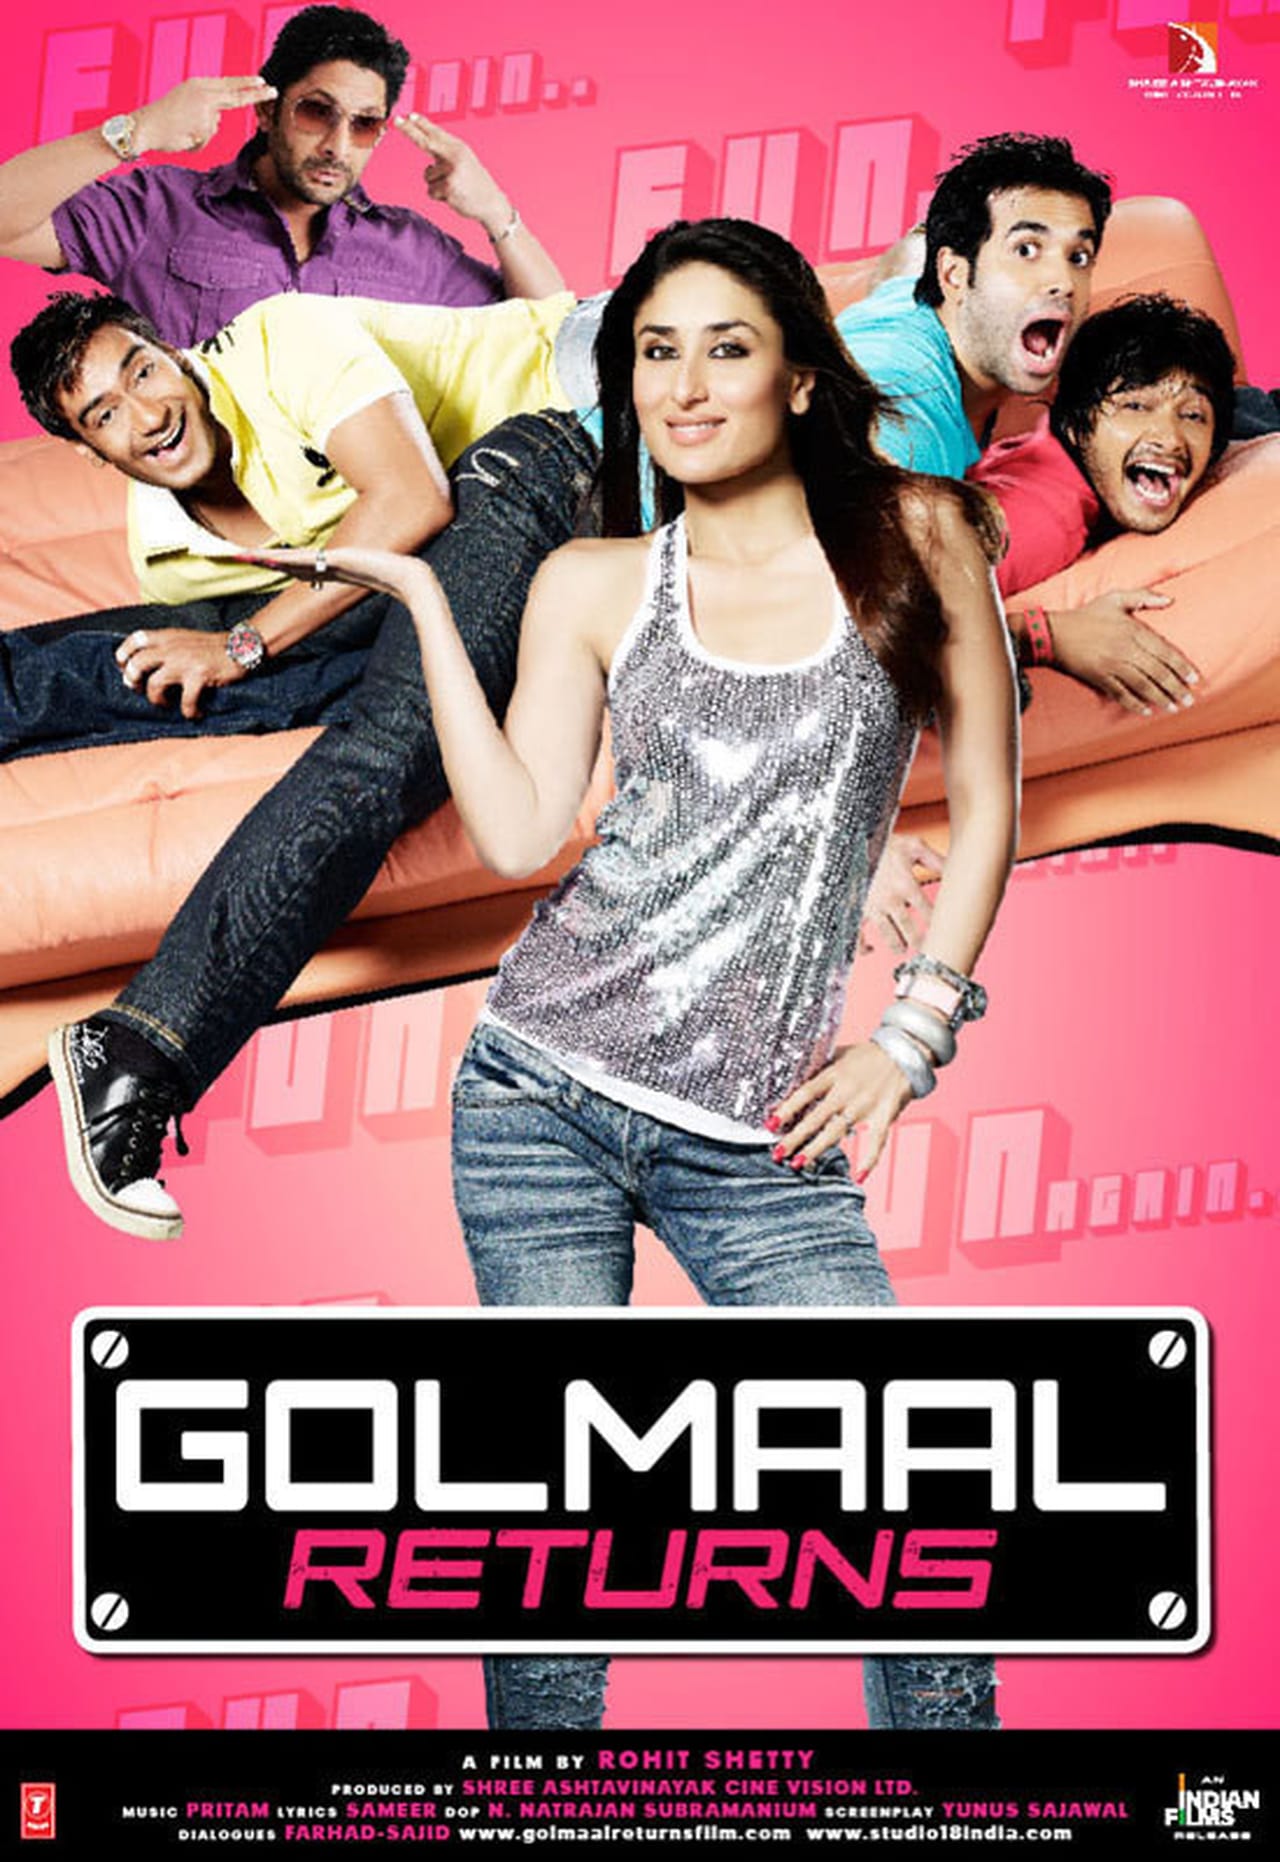 GOLMAAL RETURNS (2008) ดวงใจบริสุทธิ์ พากย์ไทย